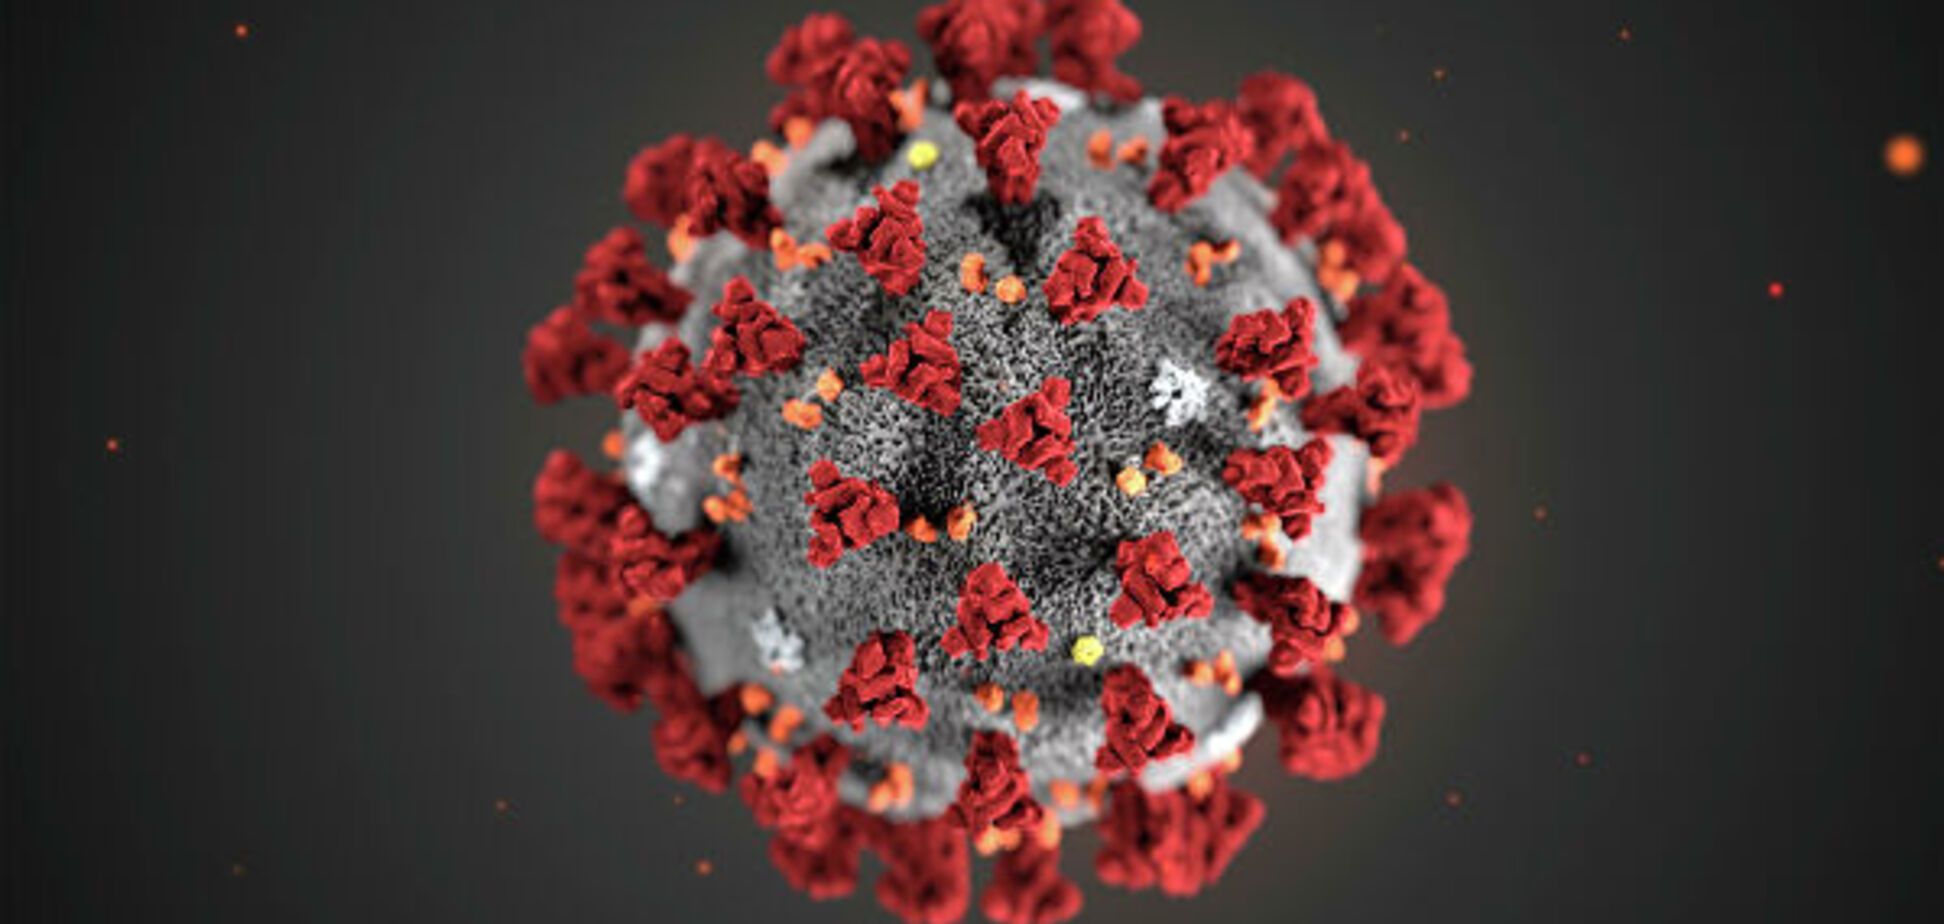 Скільки коронавірус живе в організмі: з'явилася остаточна відповідь